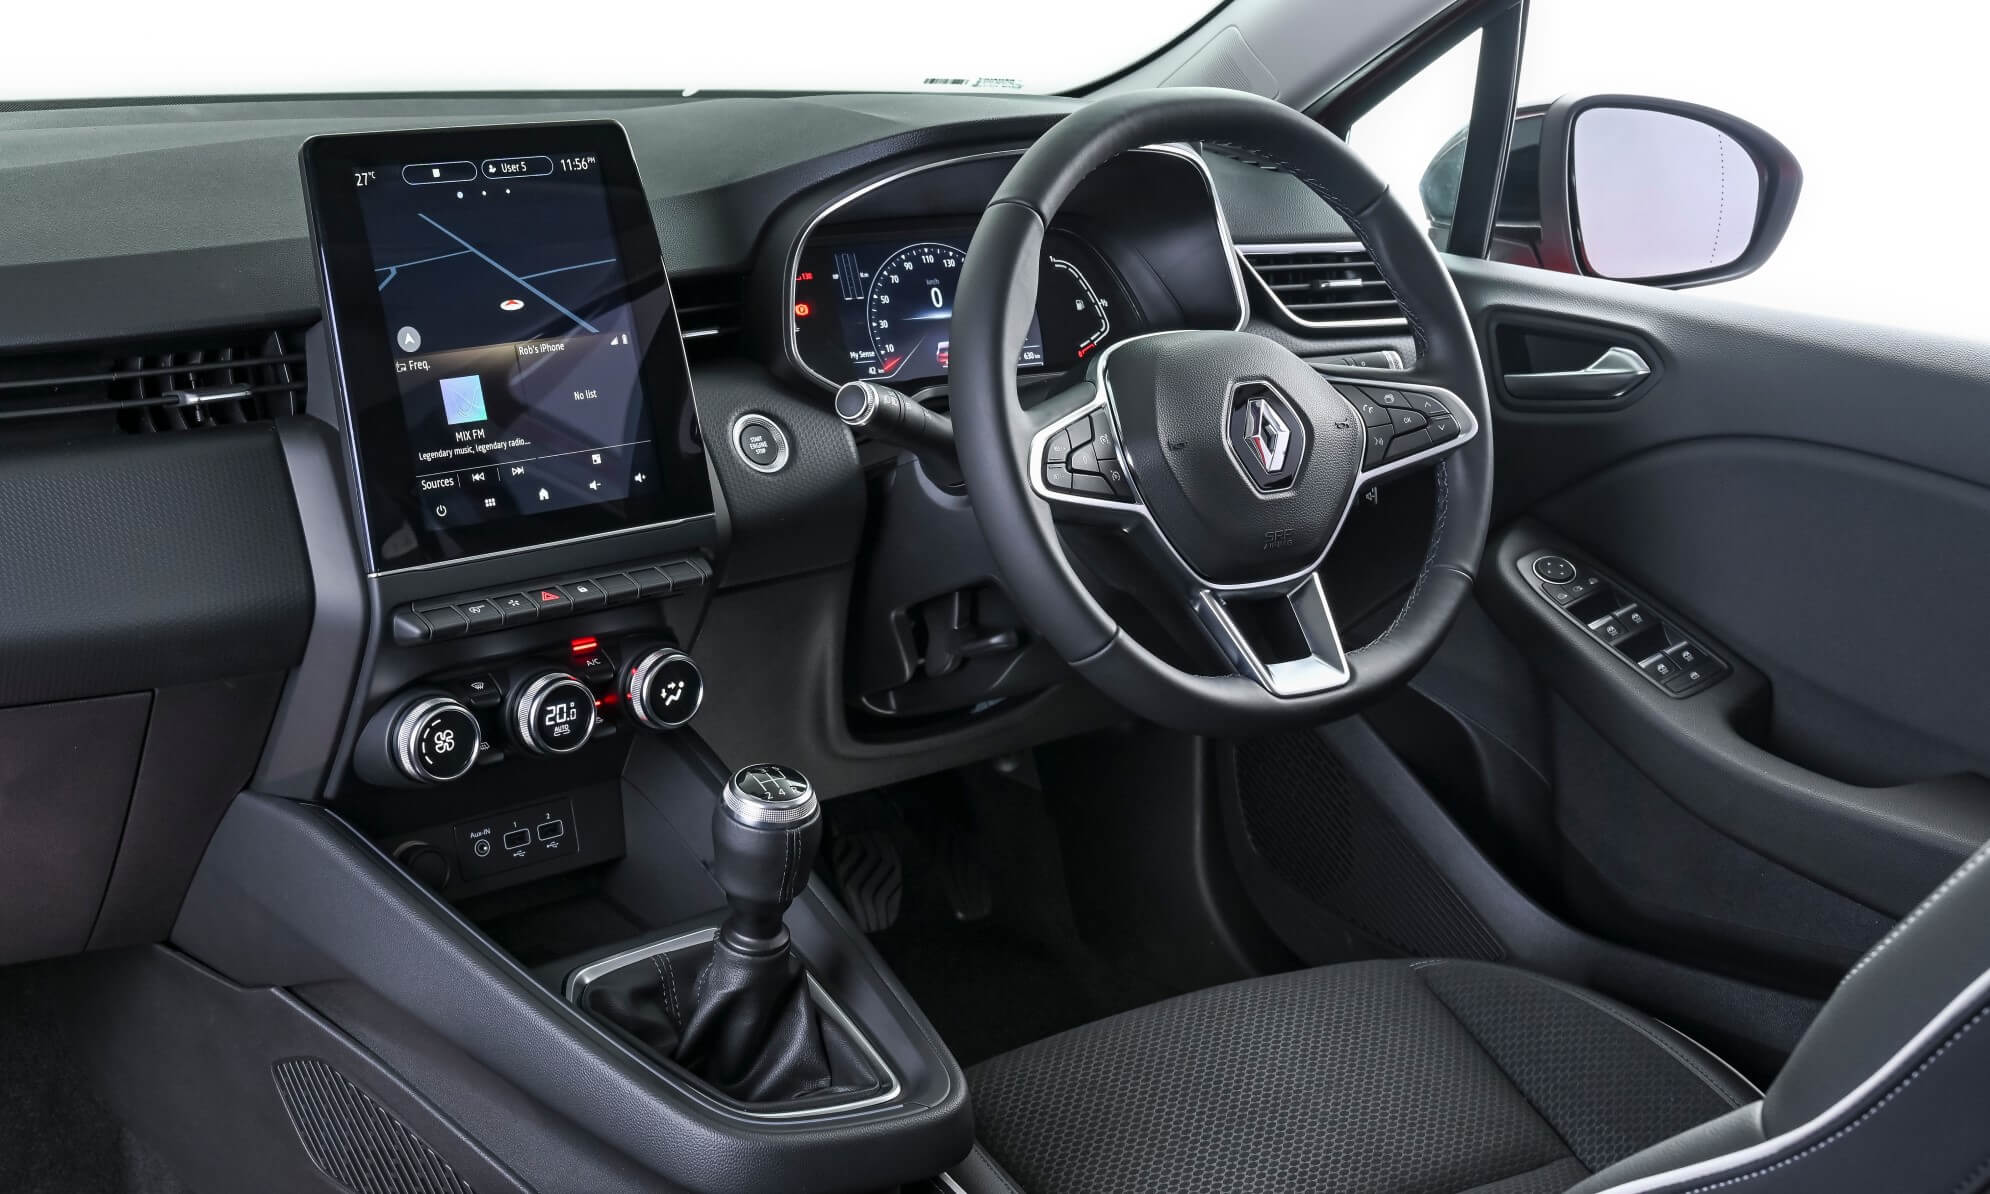 Renault Clio Intens interior